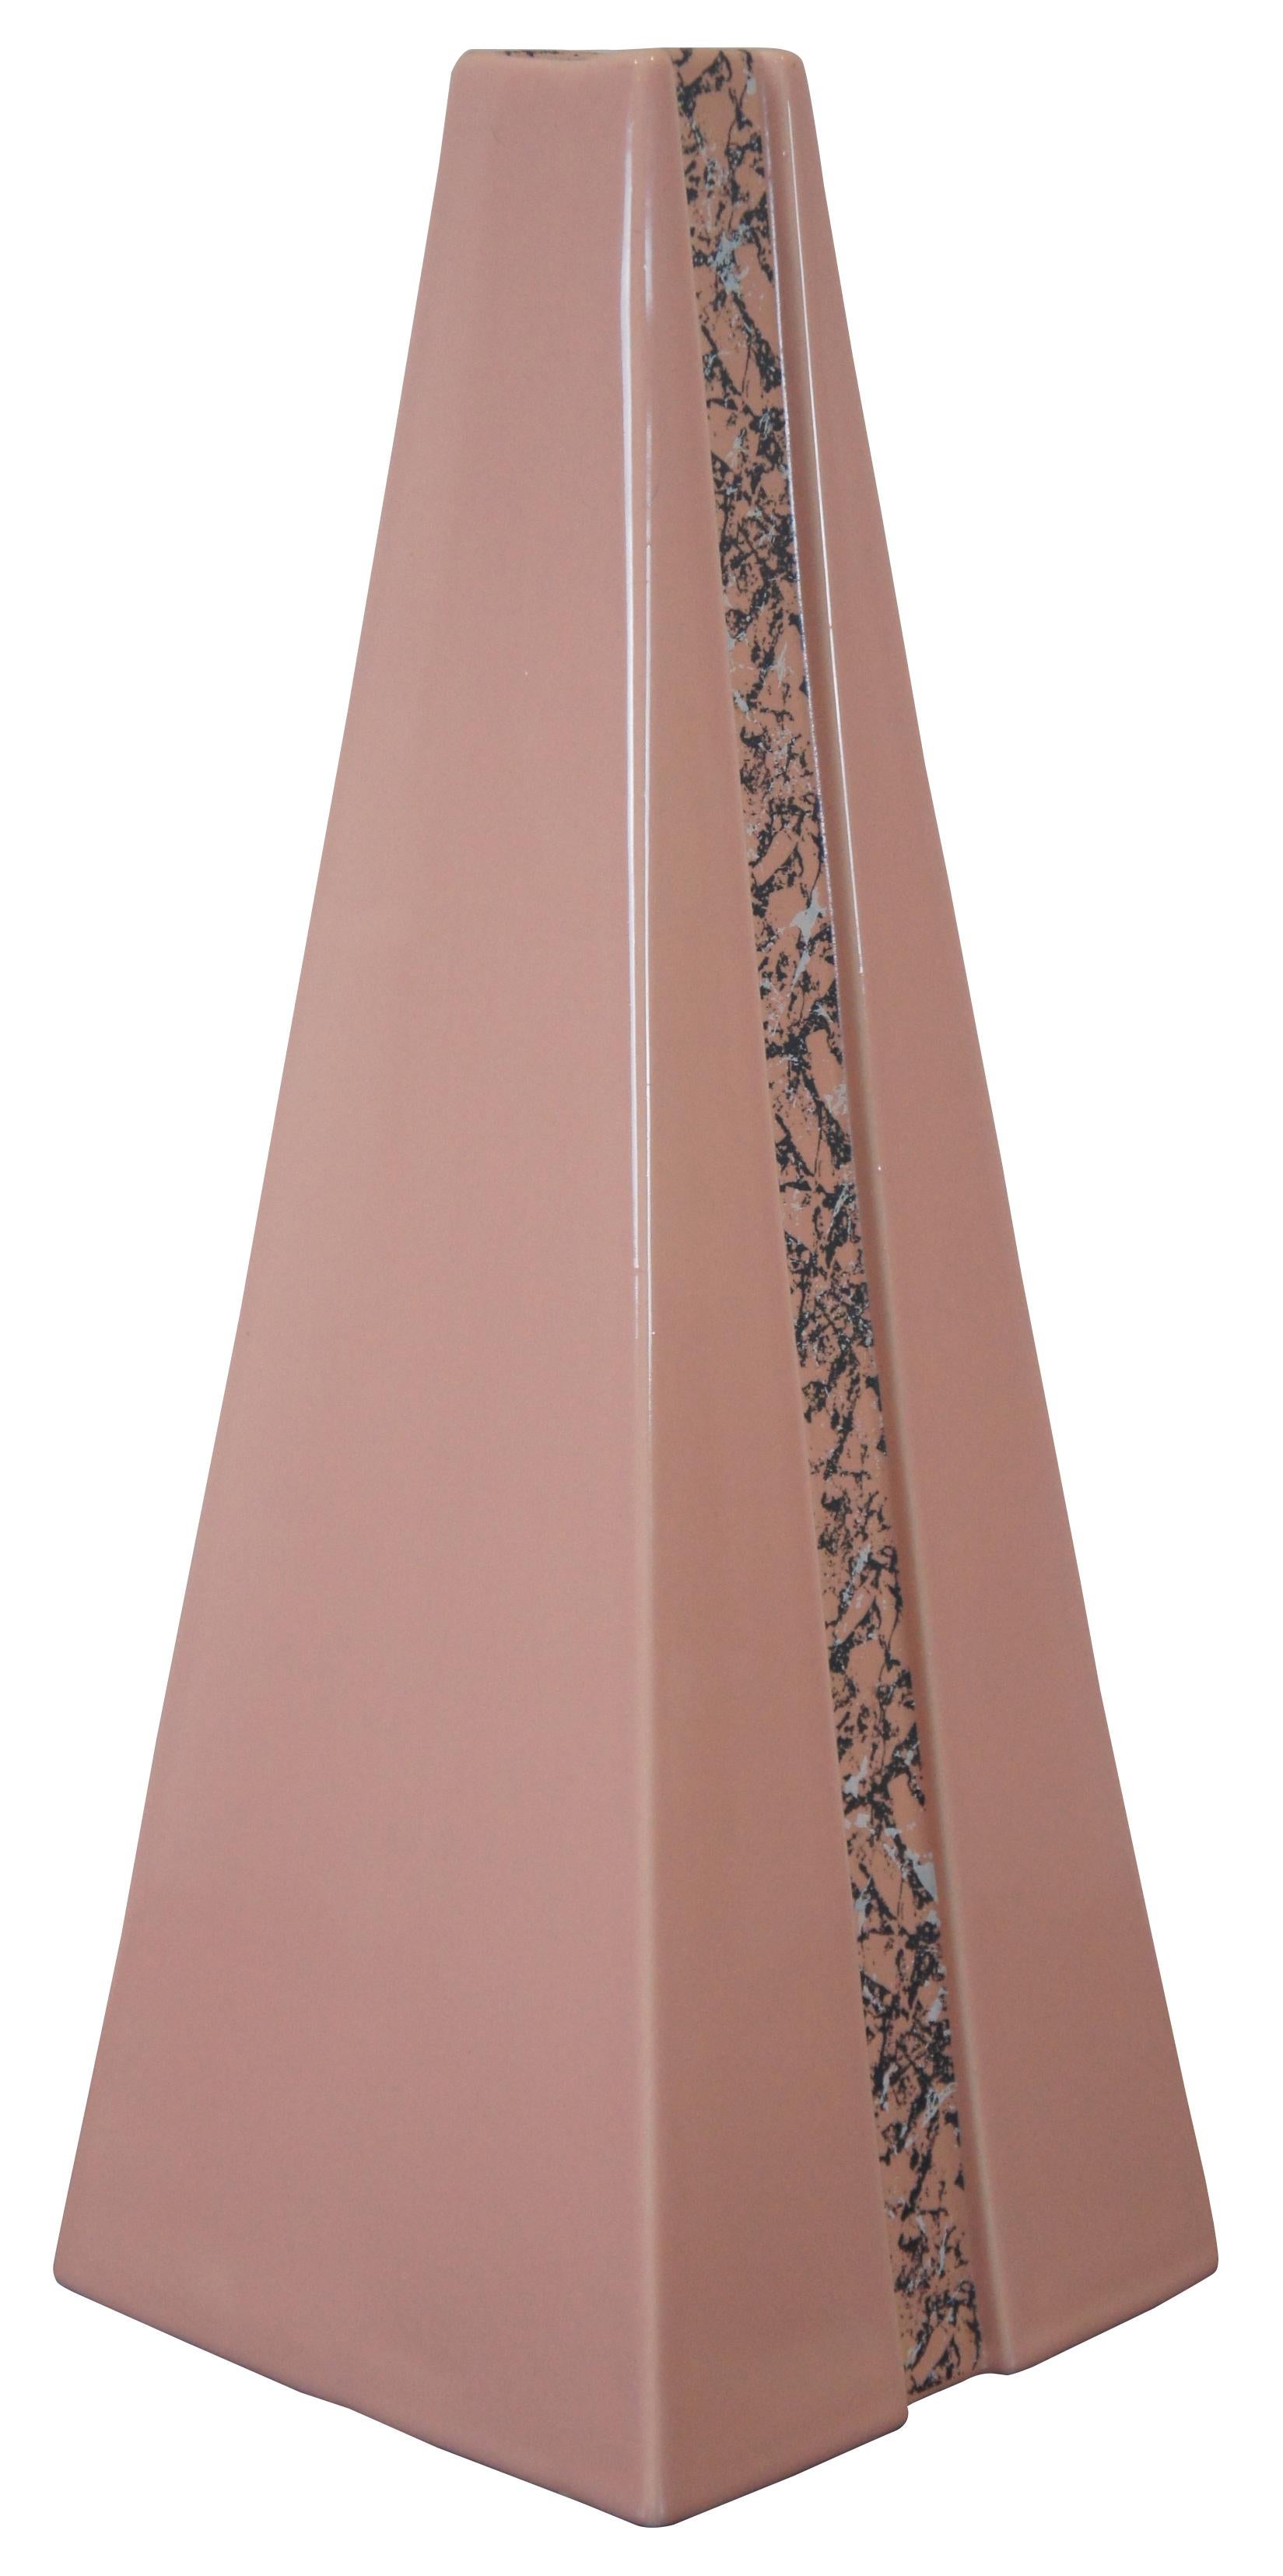 pyramid vase ceramic